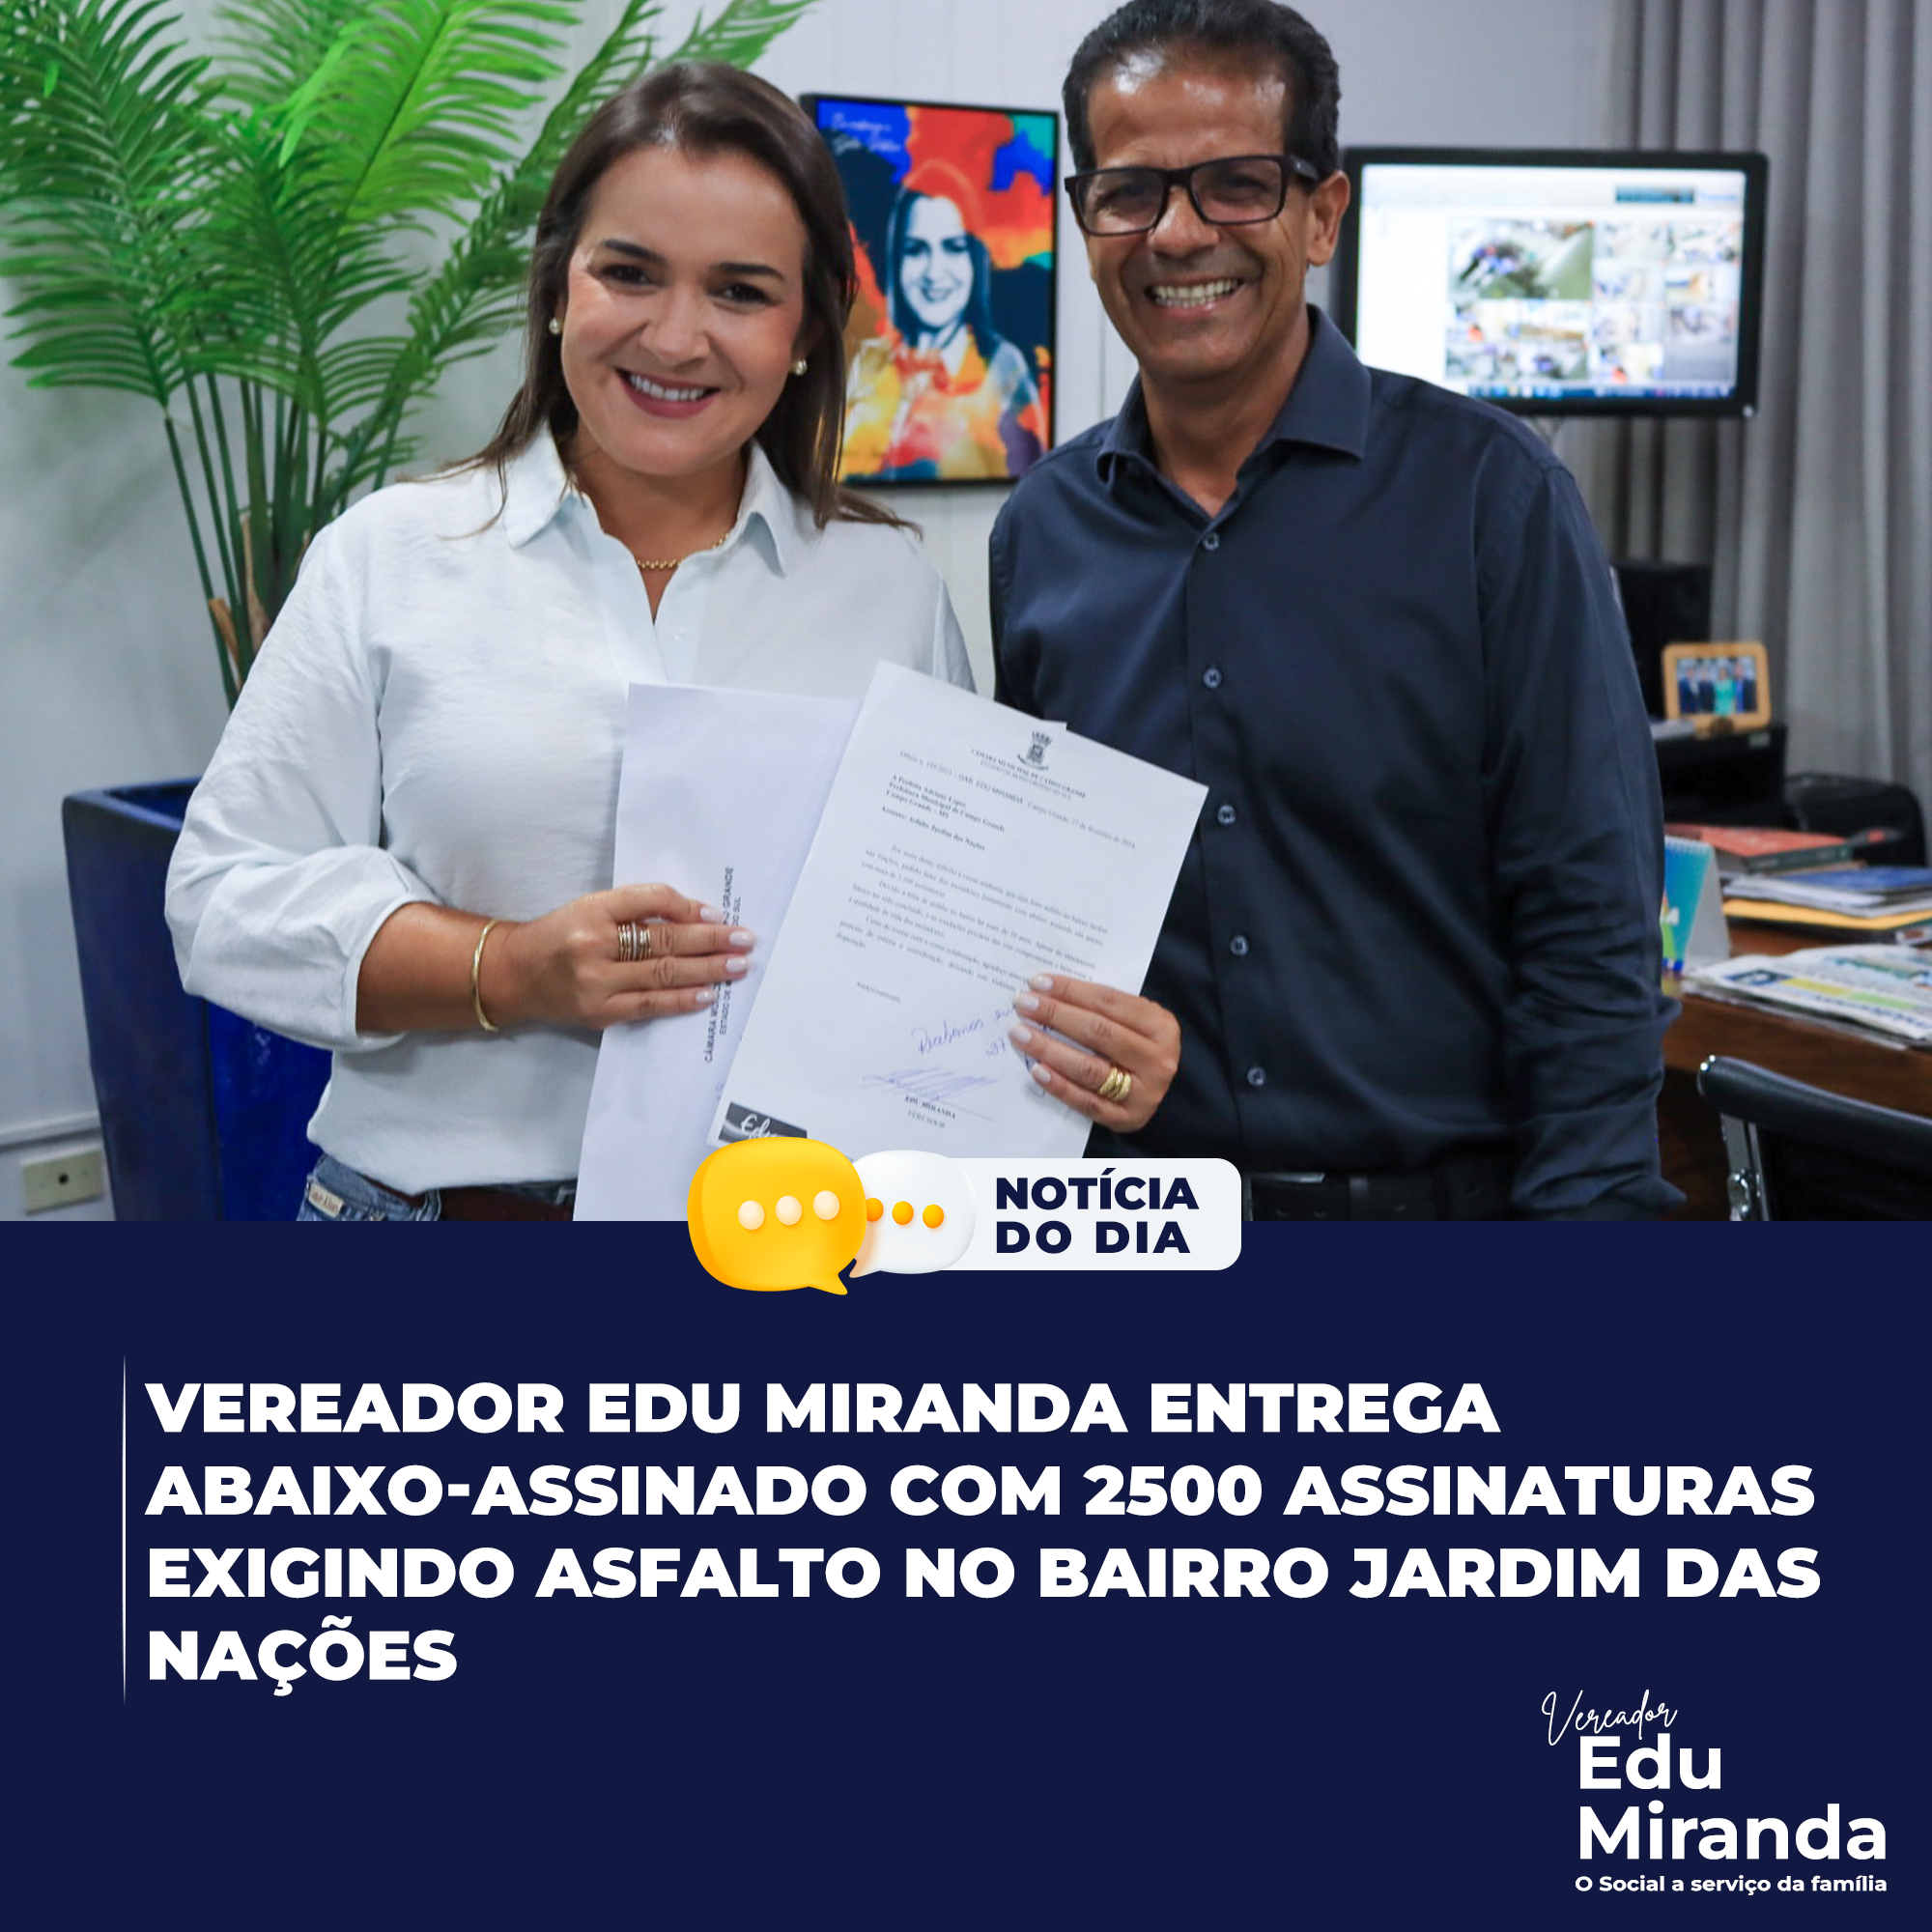 Vereador Edu Miranda entrega Abaixo-Assinado com 2500 assinaturas exigindo asfalto no Bairro Jardim das Nações